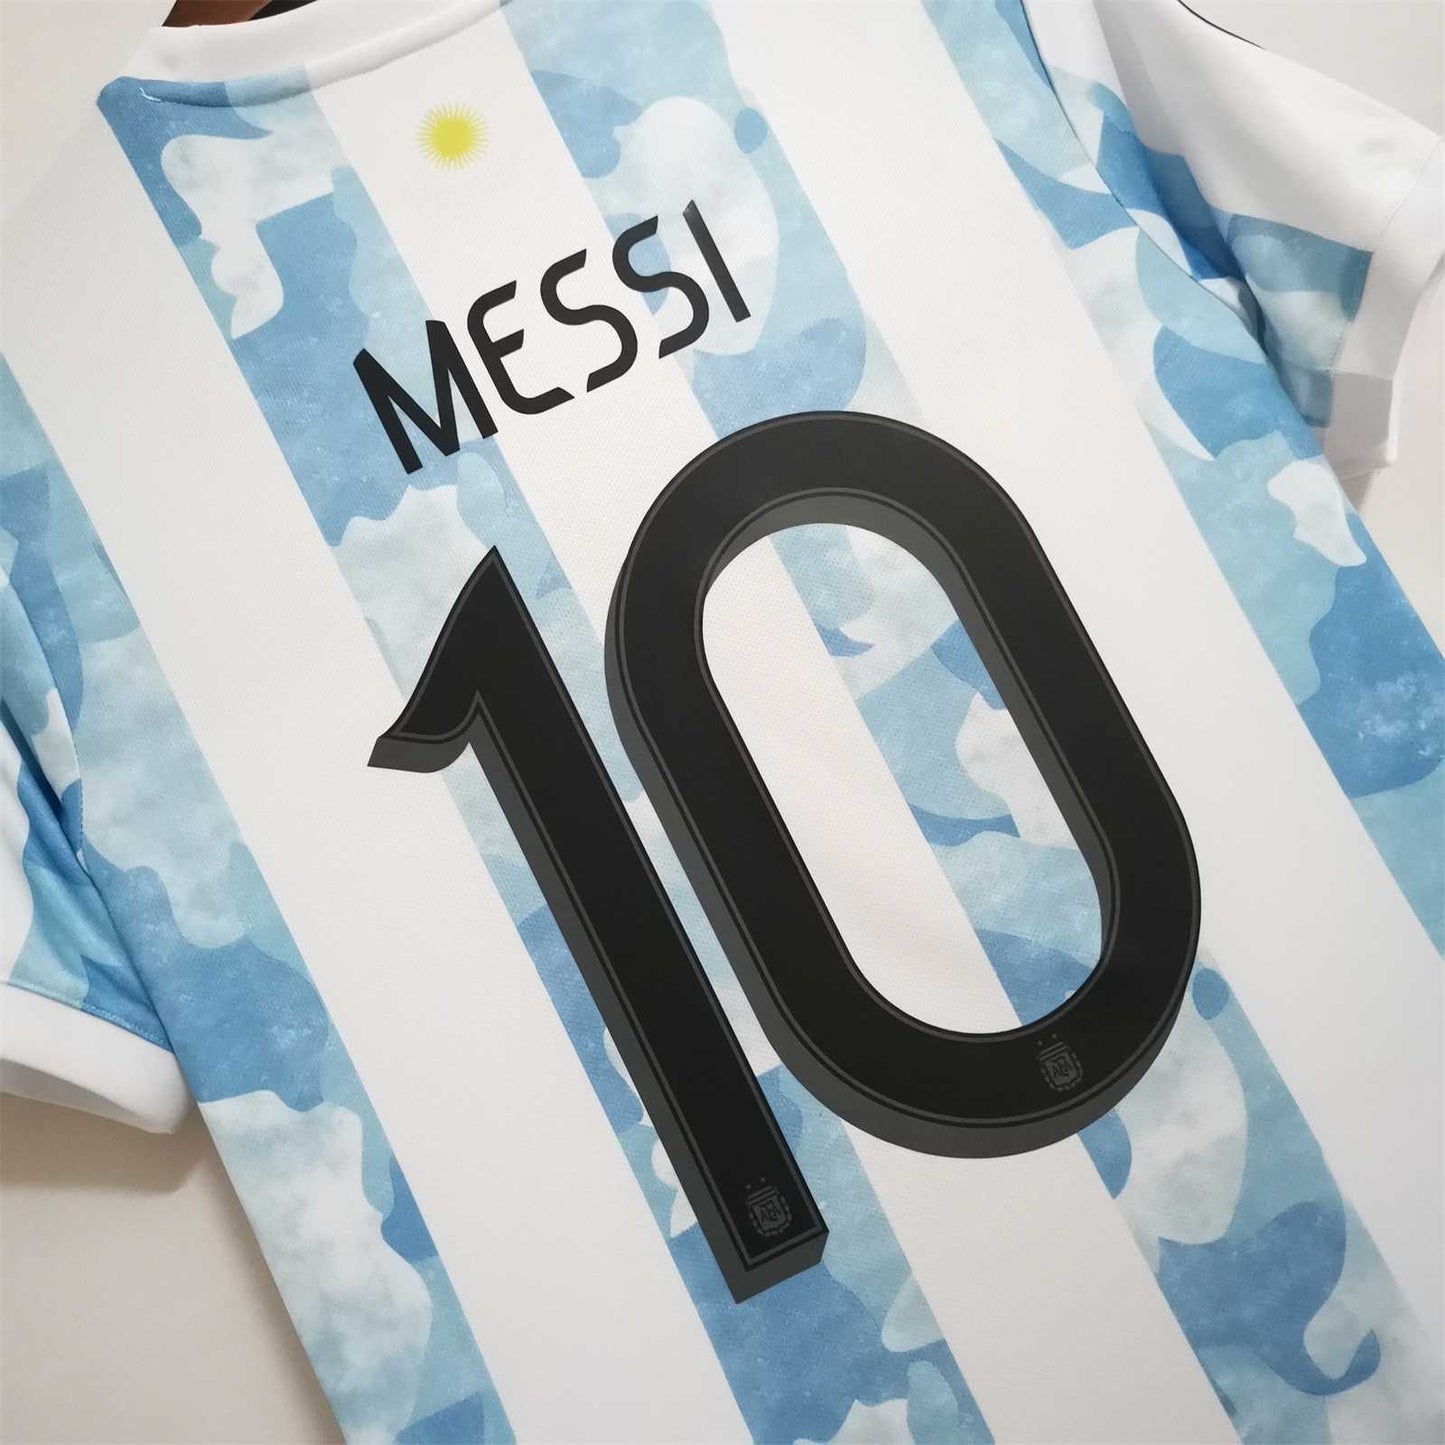 Lionel Messi 10 Copa America 2021 Final Edition Jersey